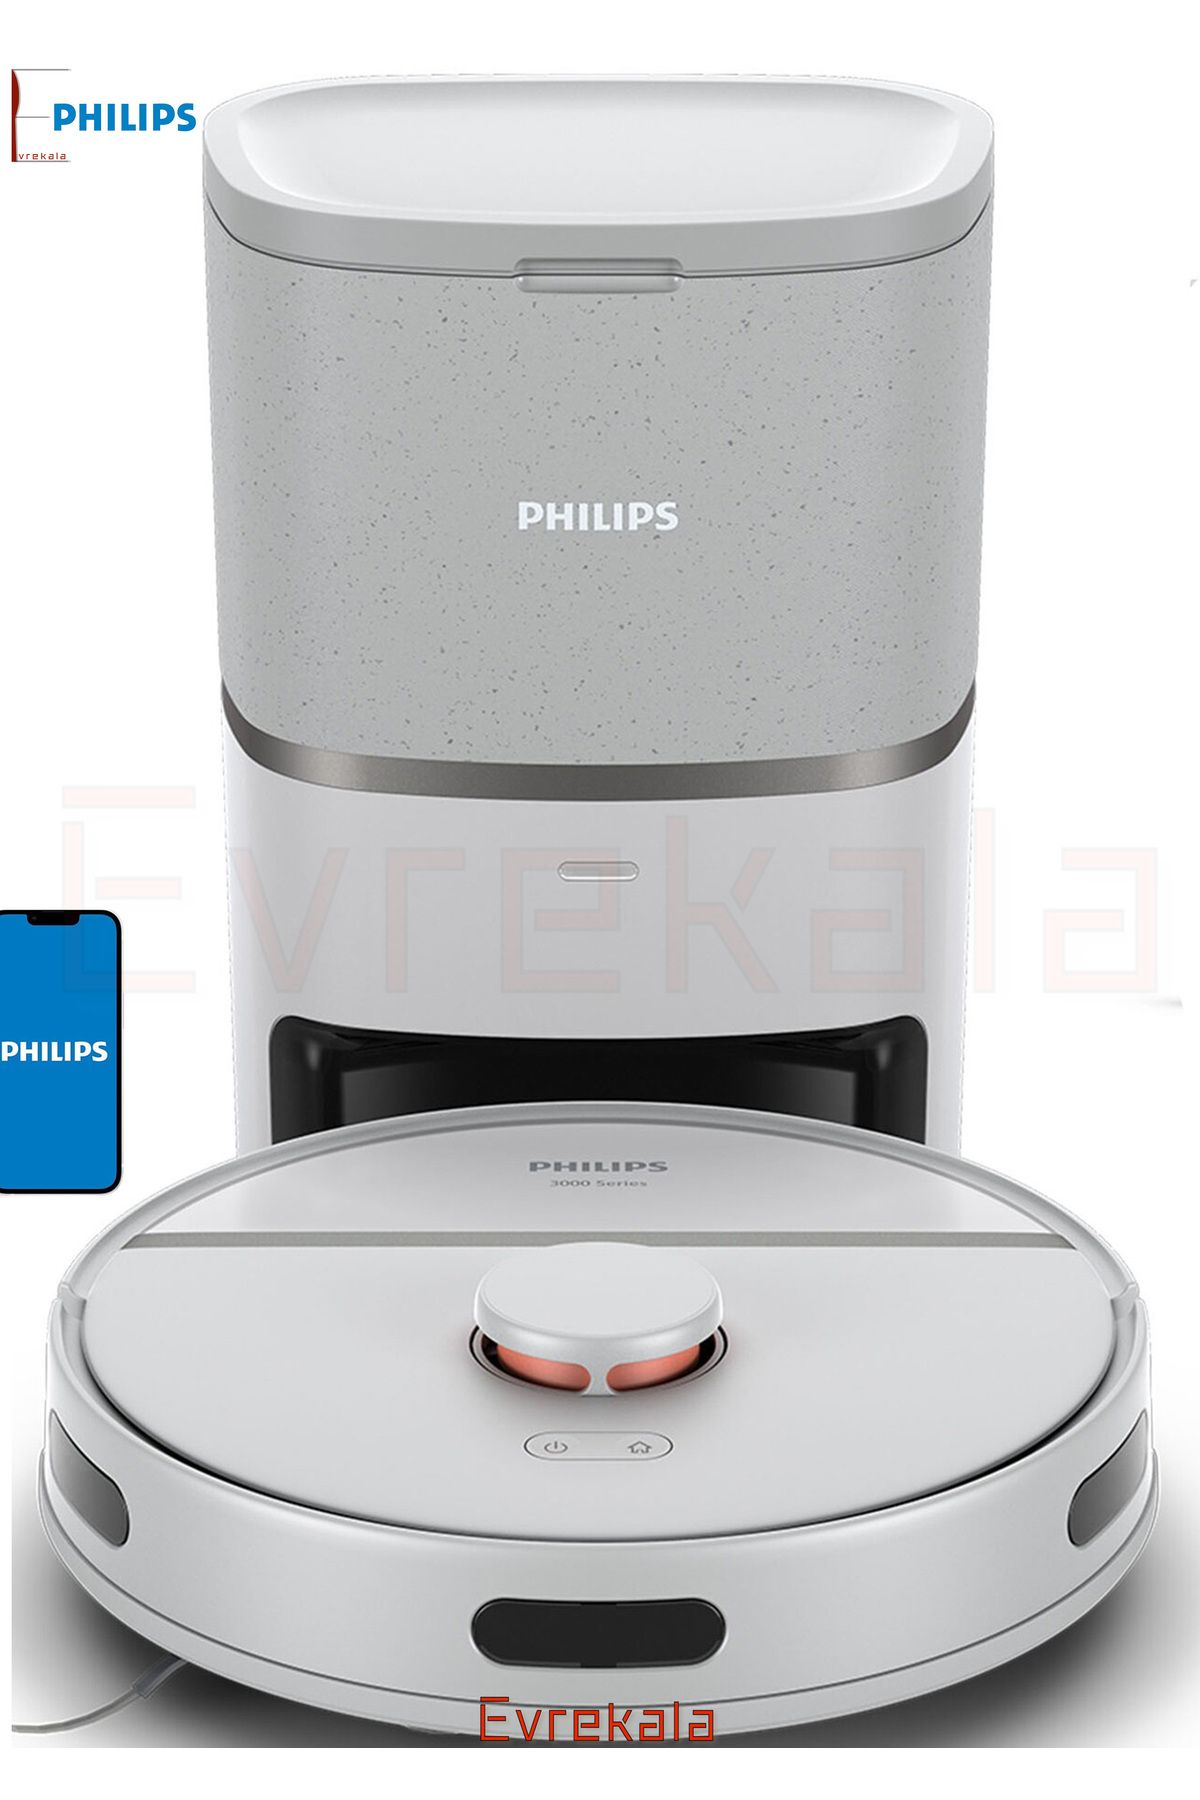 Philips Evrekala Shop Robot Süpürge Philips Islak-Kuru Tüm Zeminleri Silme-Süpürme Yeni -Yetkili Evrekala-